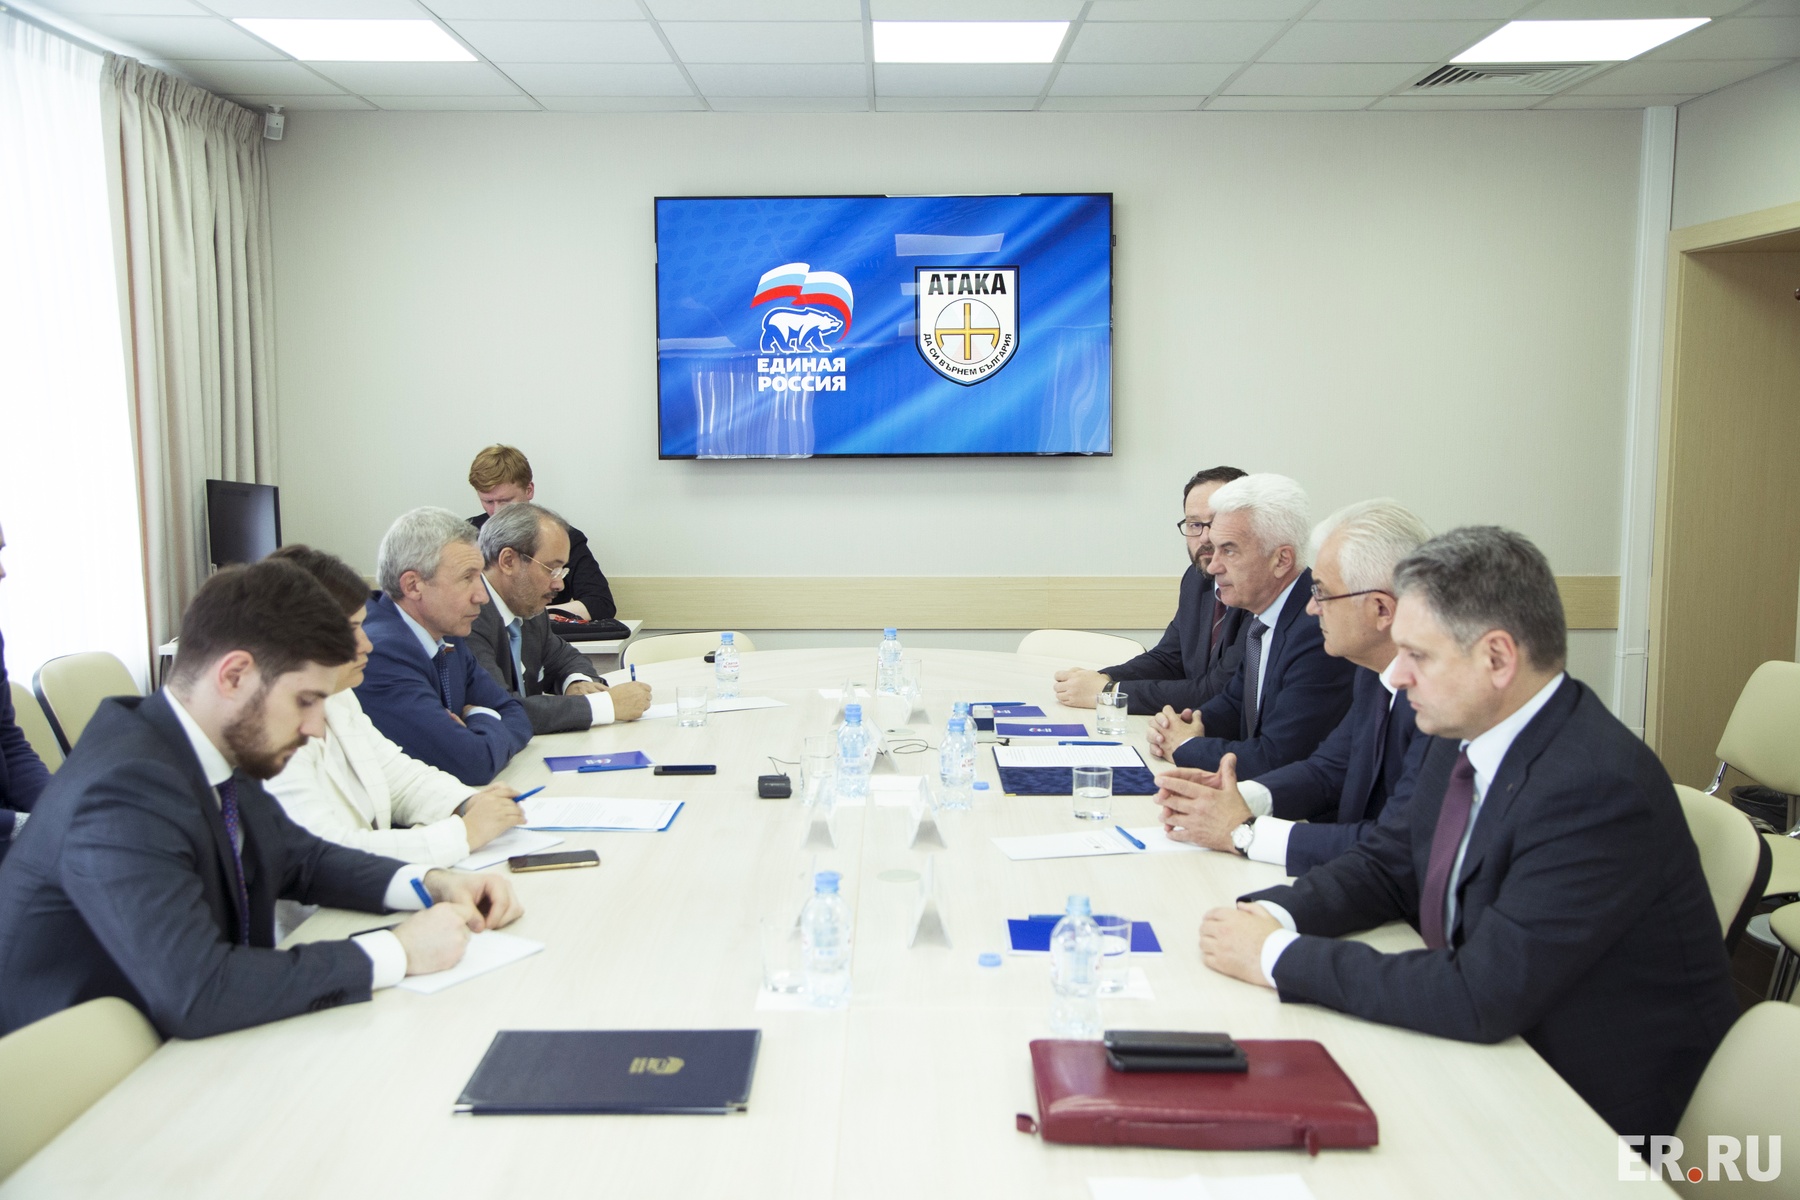  «Единая Россия» провела консультации с делегацией болгарской партии «Атака»